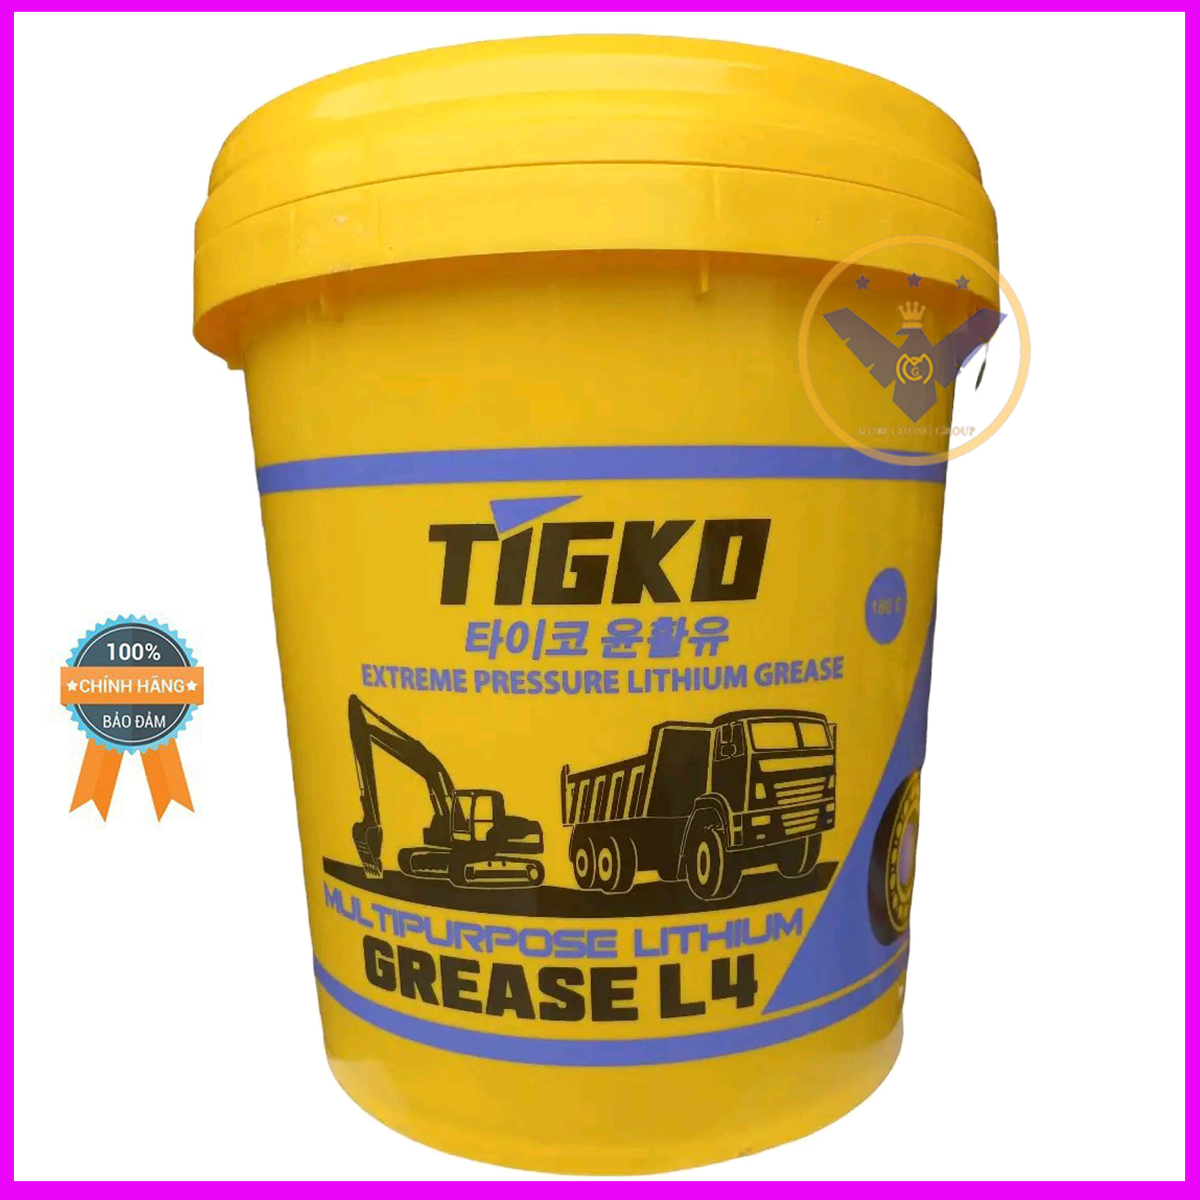 Mỡ bôi trơn chịu nhiệt Tigko Lithium Grease chịu nhiệt 180 độ L3 hoặc L4 xô 15kg